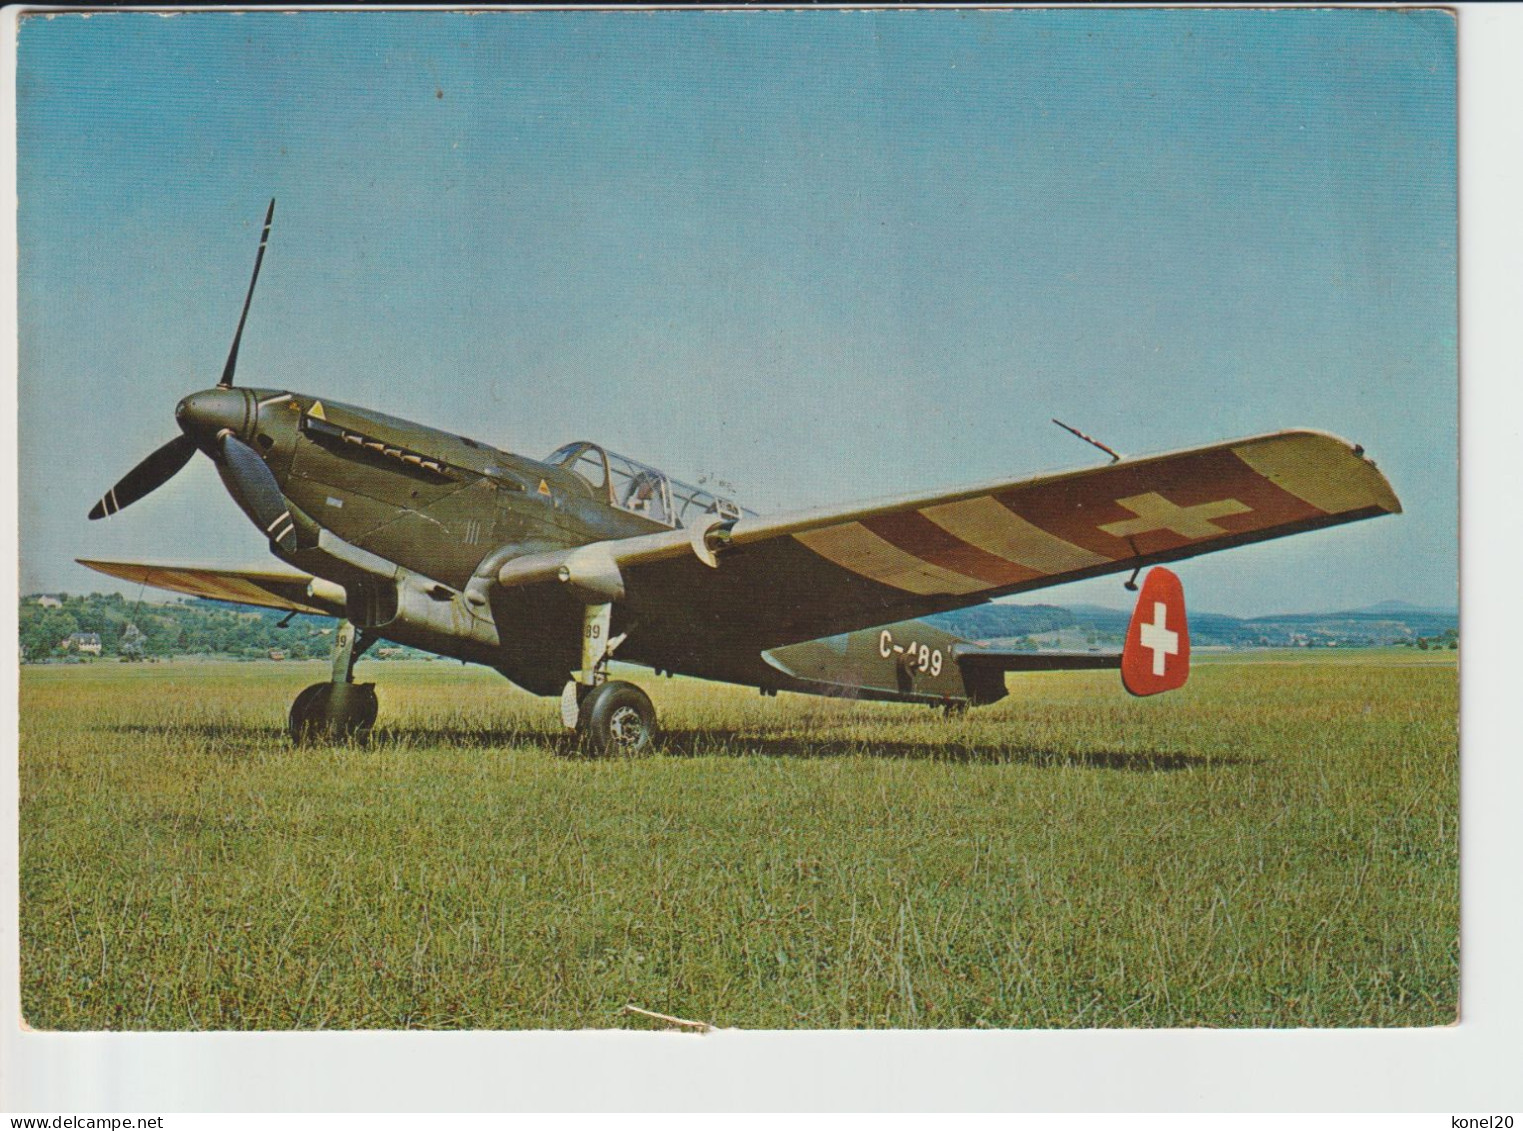 Vintage Pc Swiss C-3603 Aircraft - 1919-1938: Fra Le Due Guerre